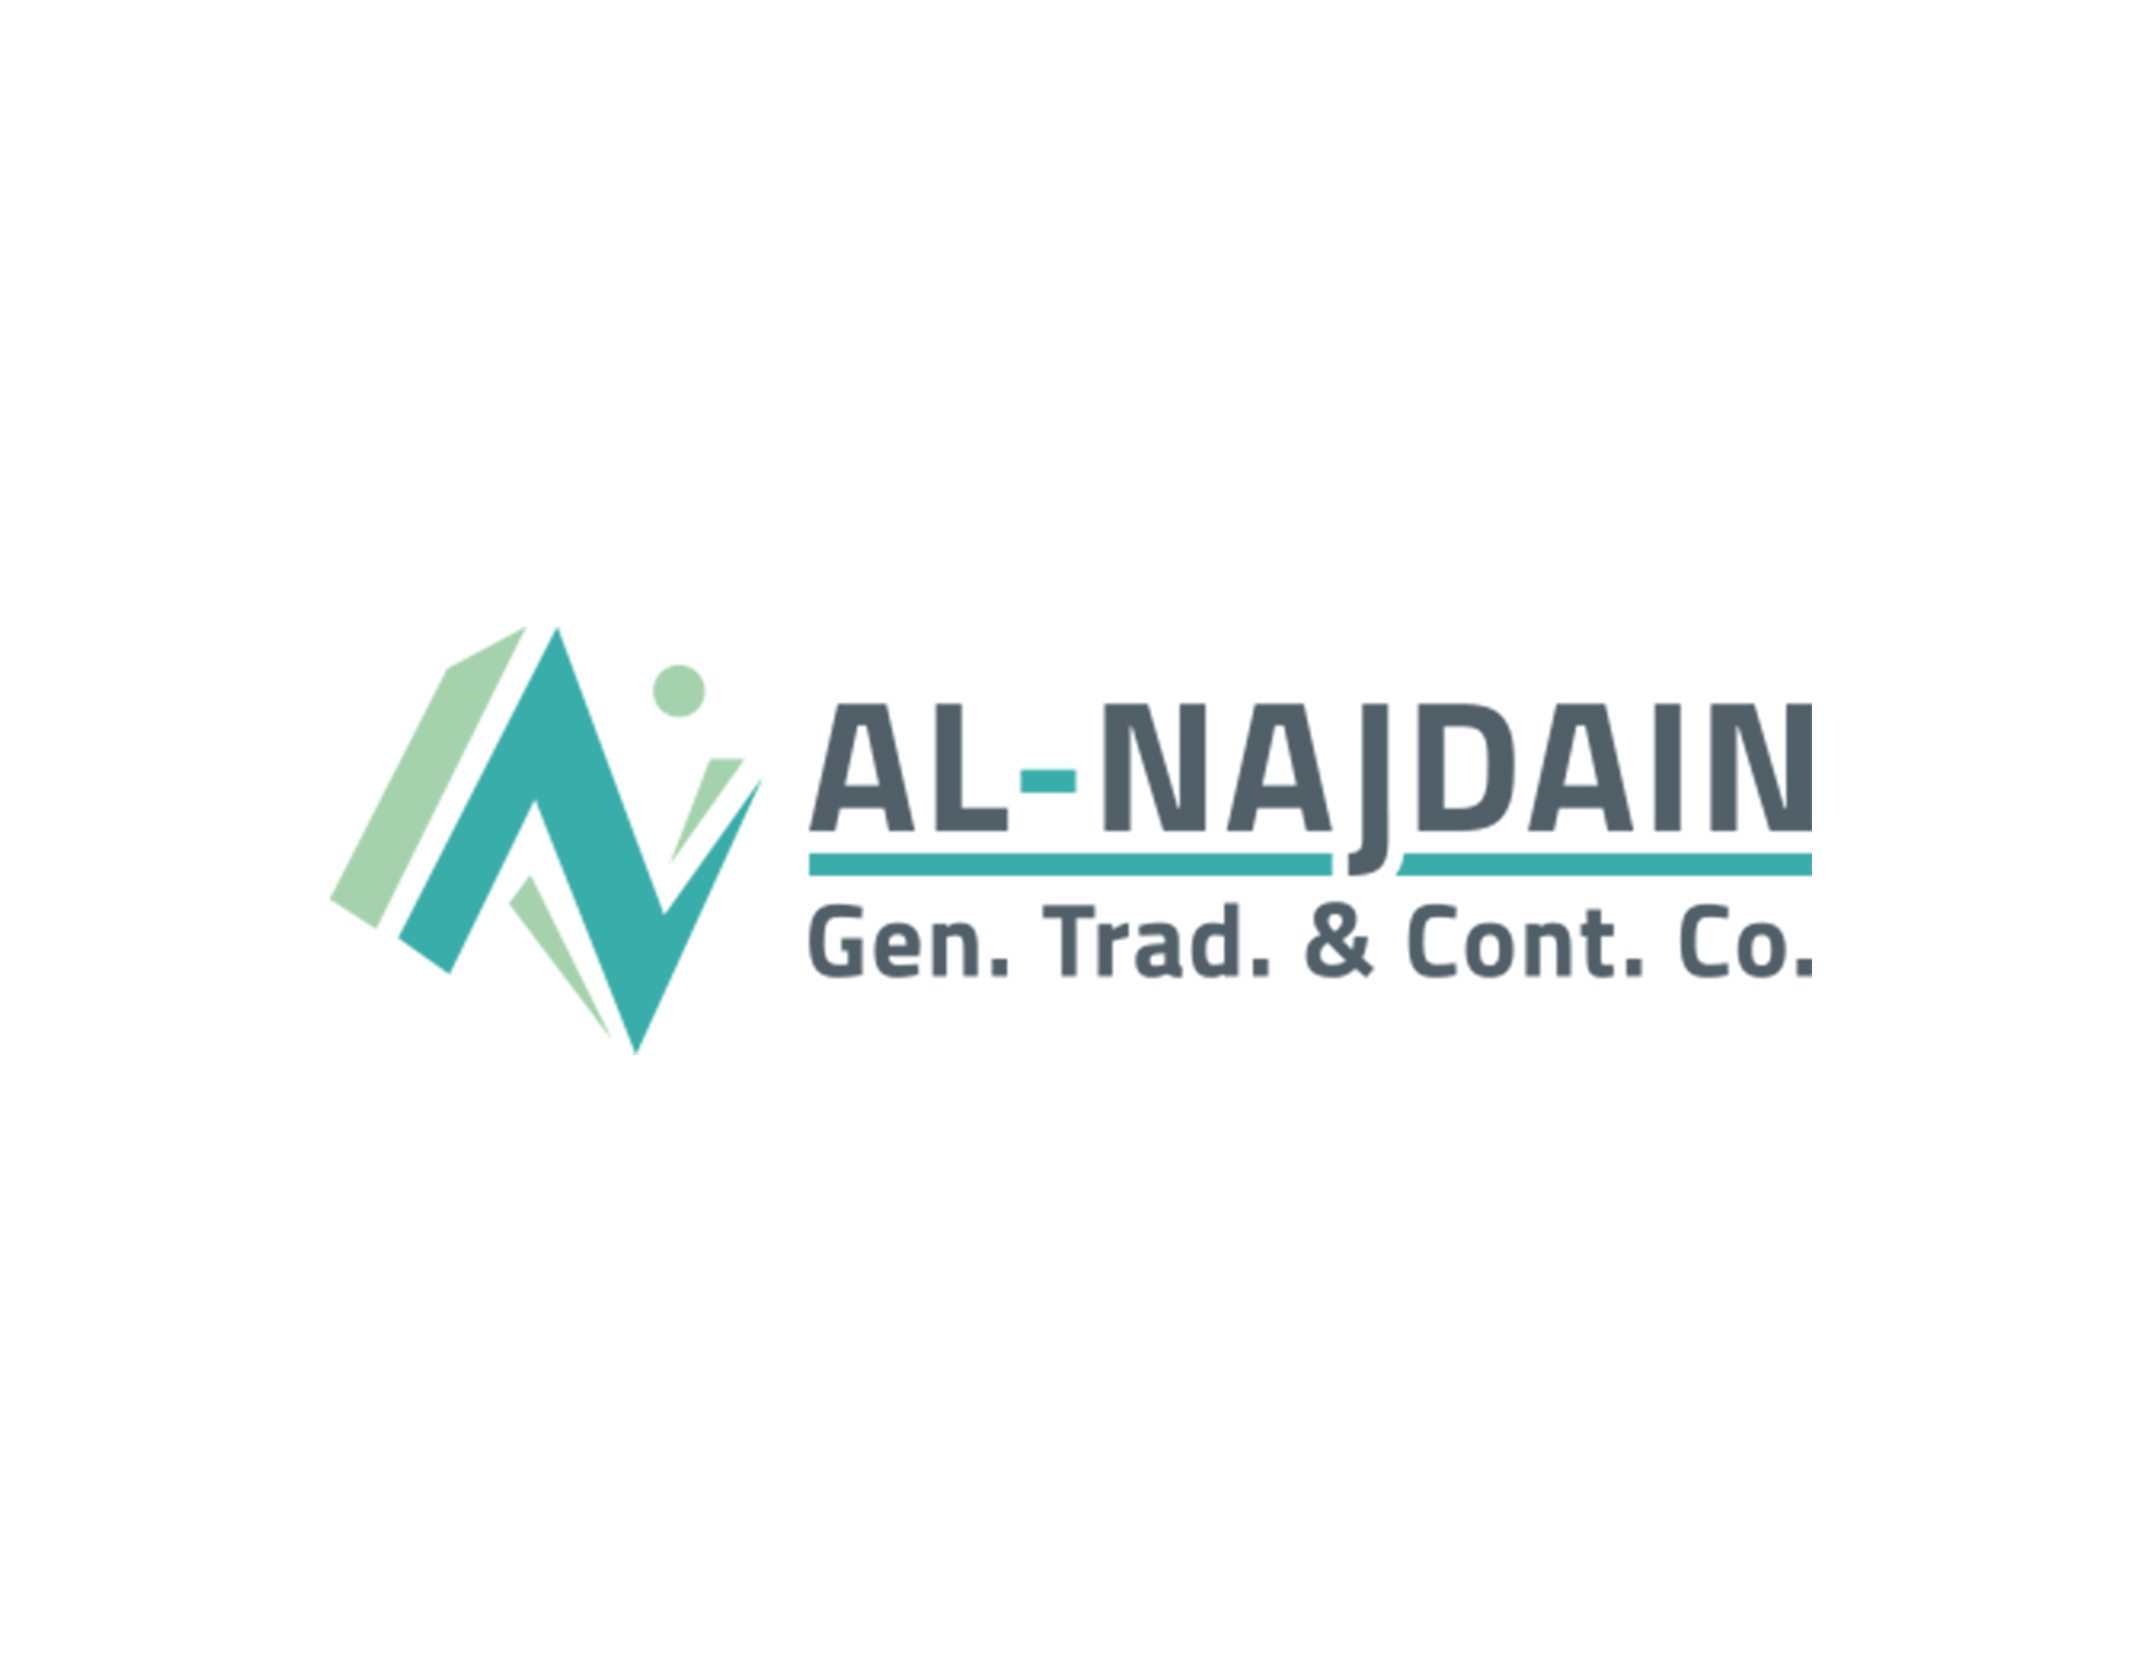 AL-NAJDAIN